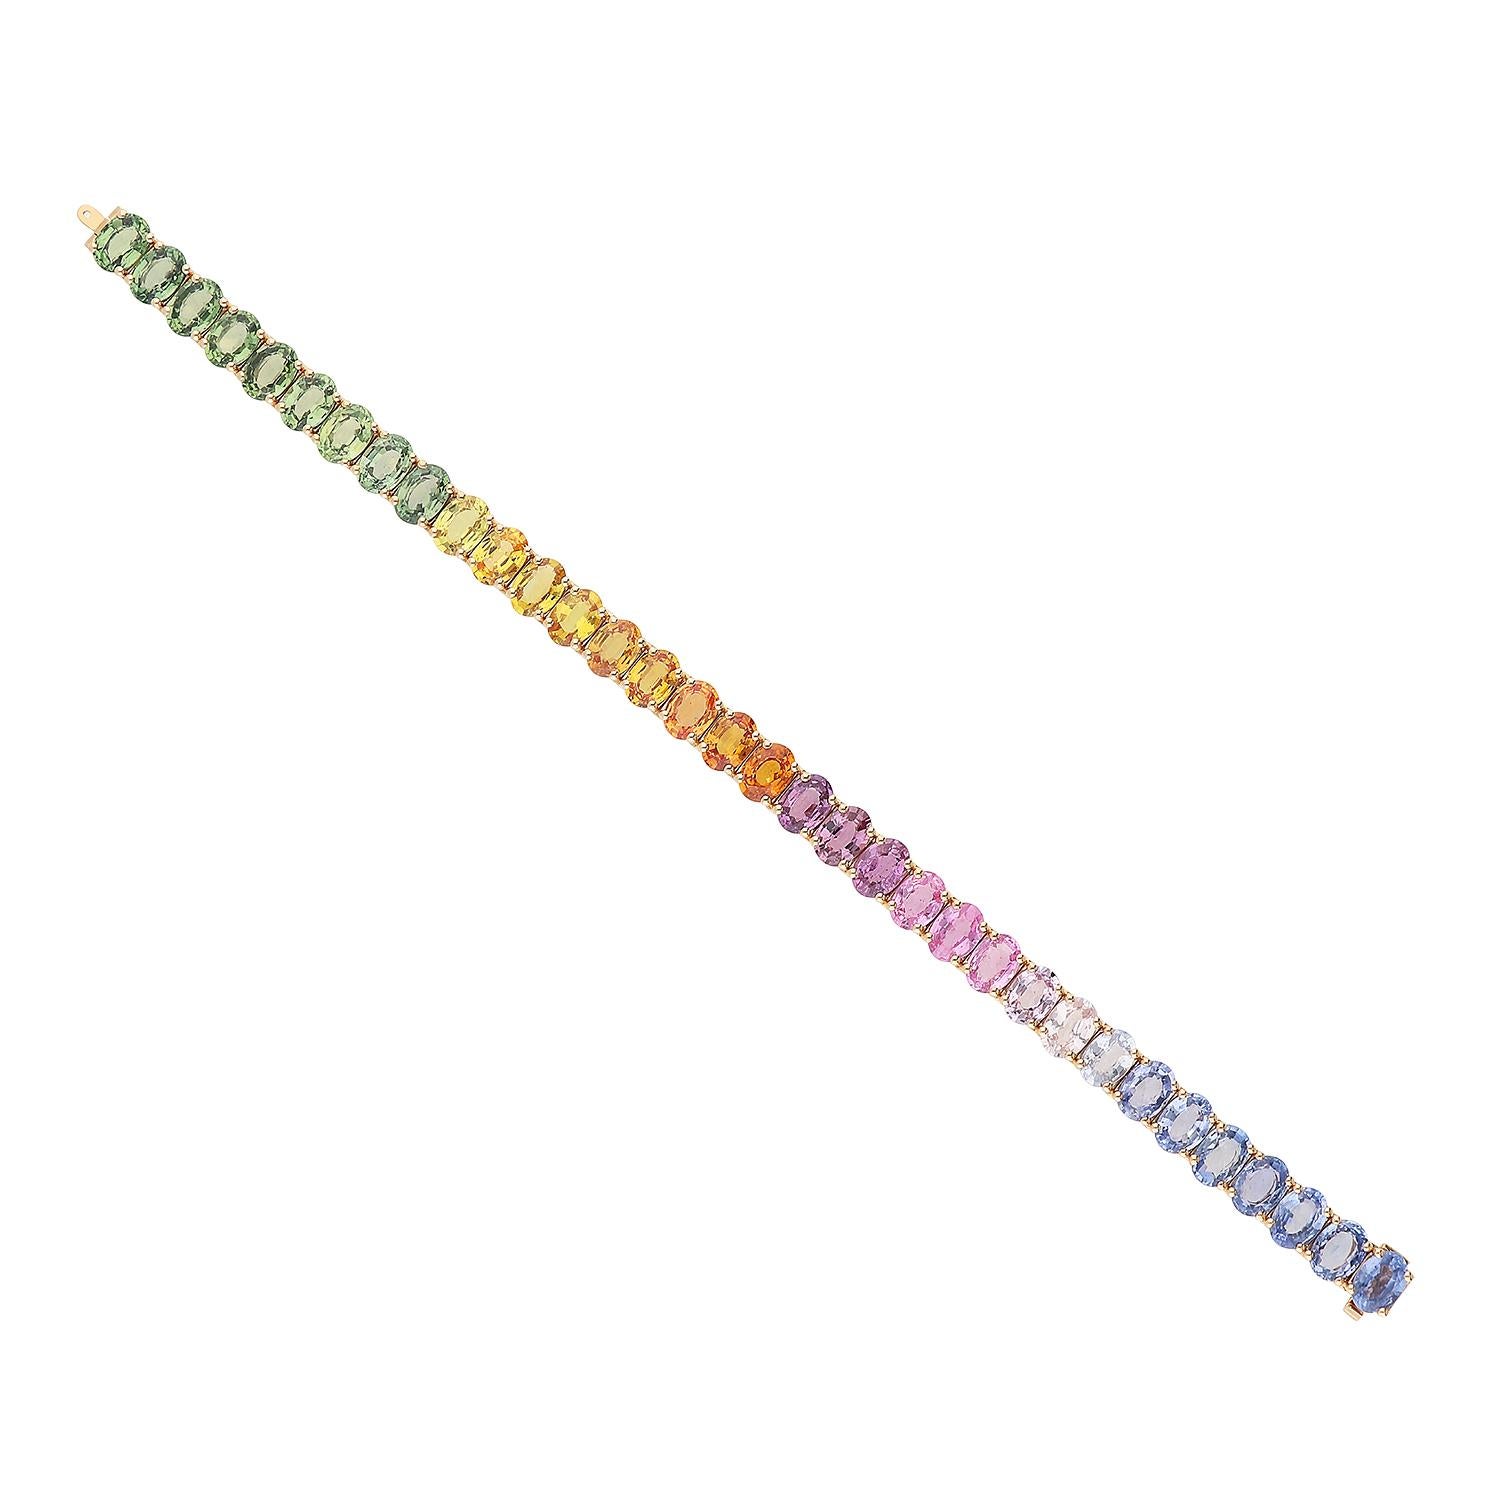 Eine elegante, moderne Tennis-Brace in oro rosa 18kt mit ovalen, mehrfarbigen Zaffiren, ausgewählt in der Farbe arcobaleno für 34,00 Karat und mit Diamanten an beiden Enden in der Farbe G purezza SI für 0,40 Karat. Das Gesamtgewicht des Erzes liegt